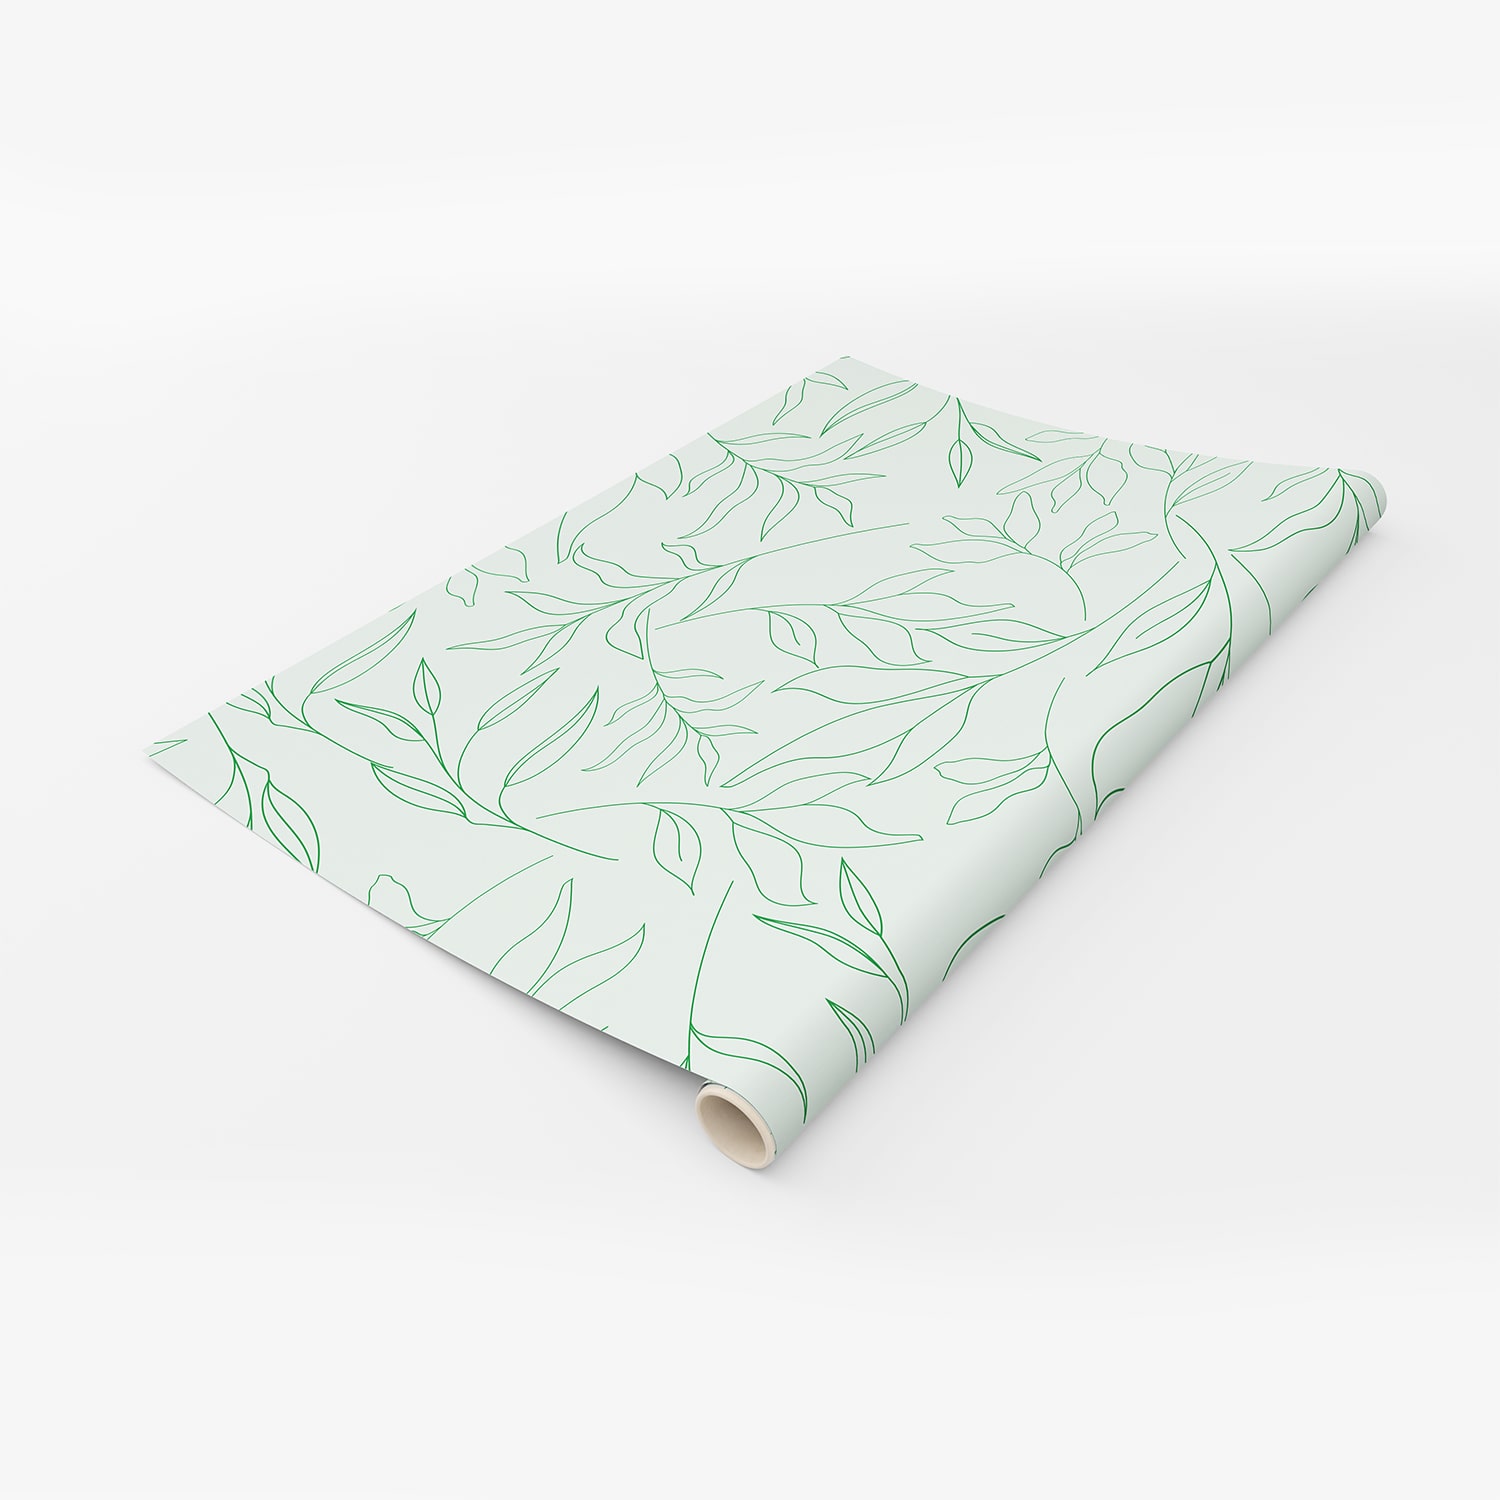 PP101-rouleau-papier-peint-adhesif-decoratif-revetement-vinyle-motifs-feuillages-vert-nature-plantes-renovation-meuble-mur-min